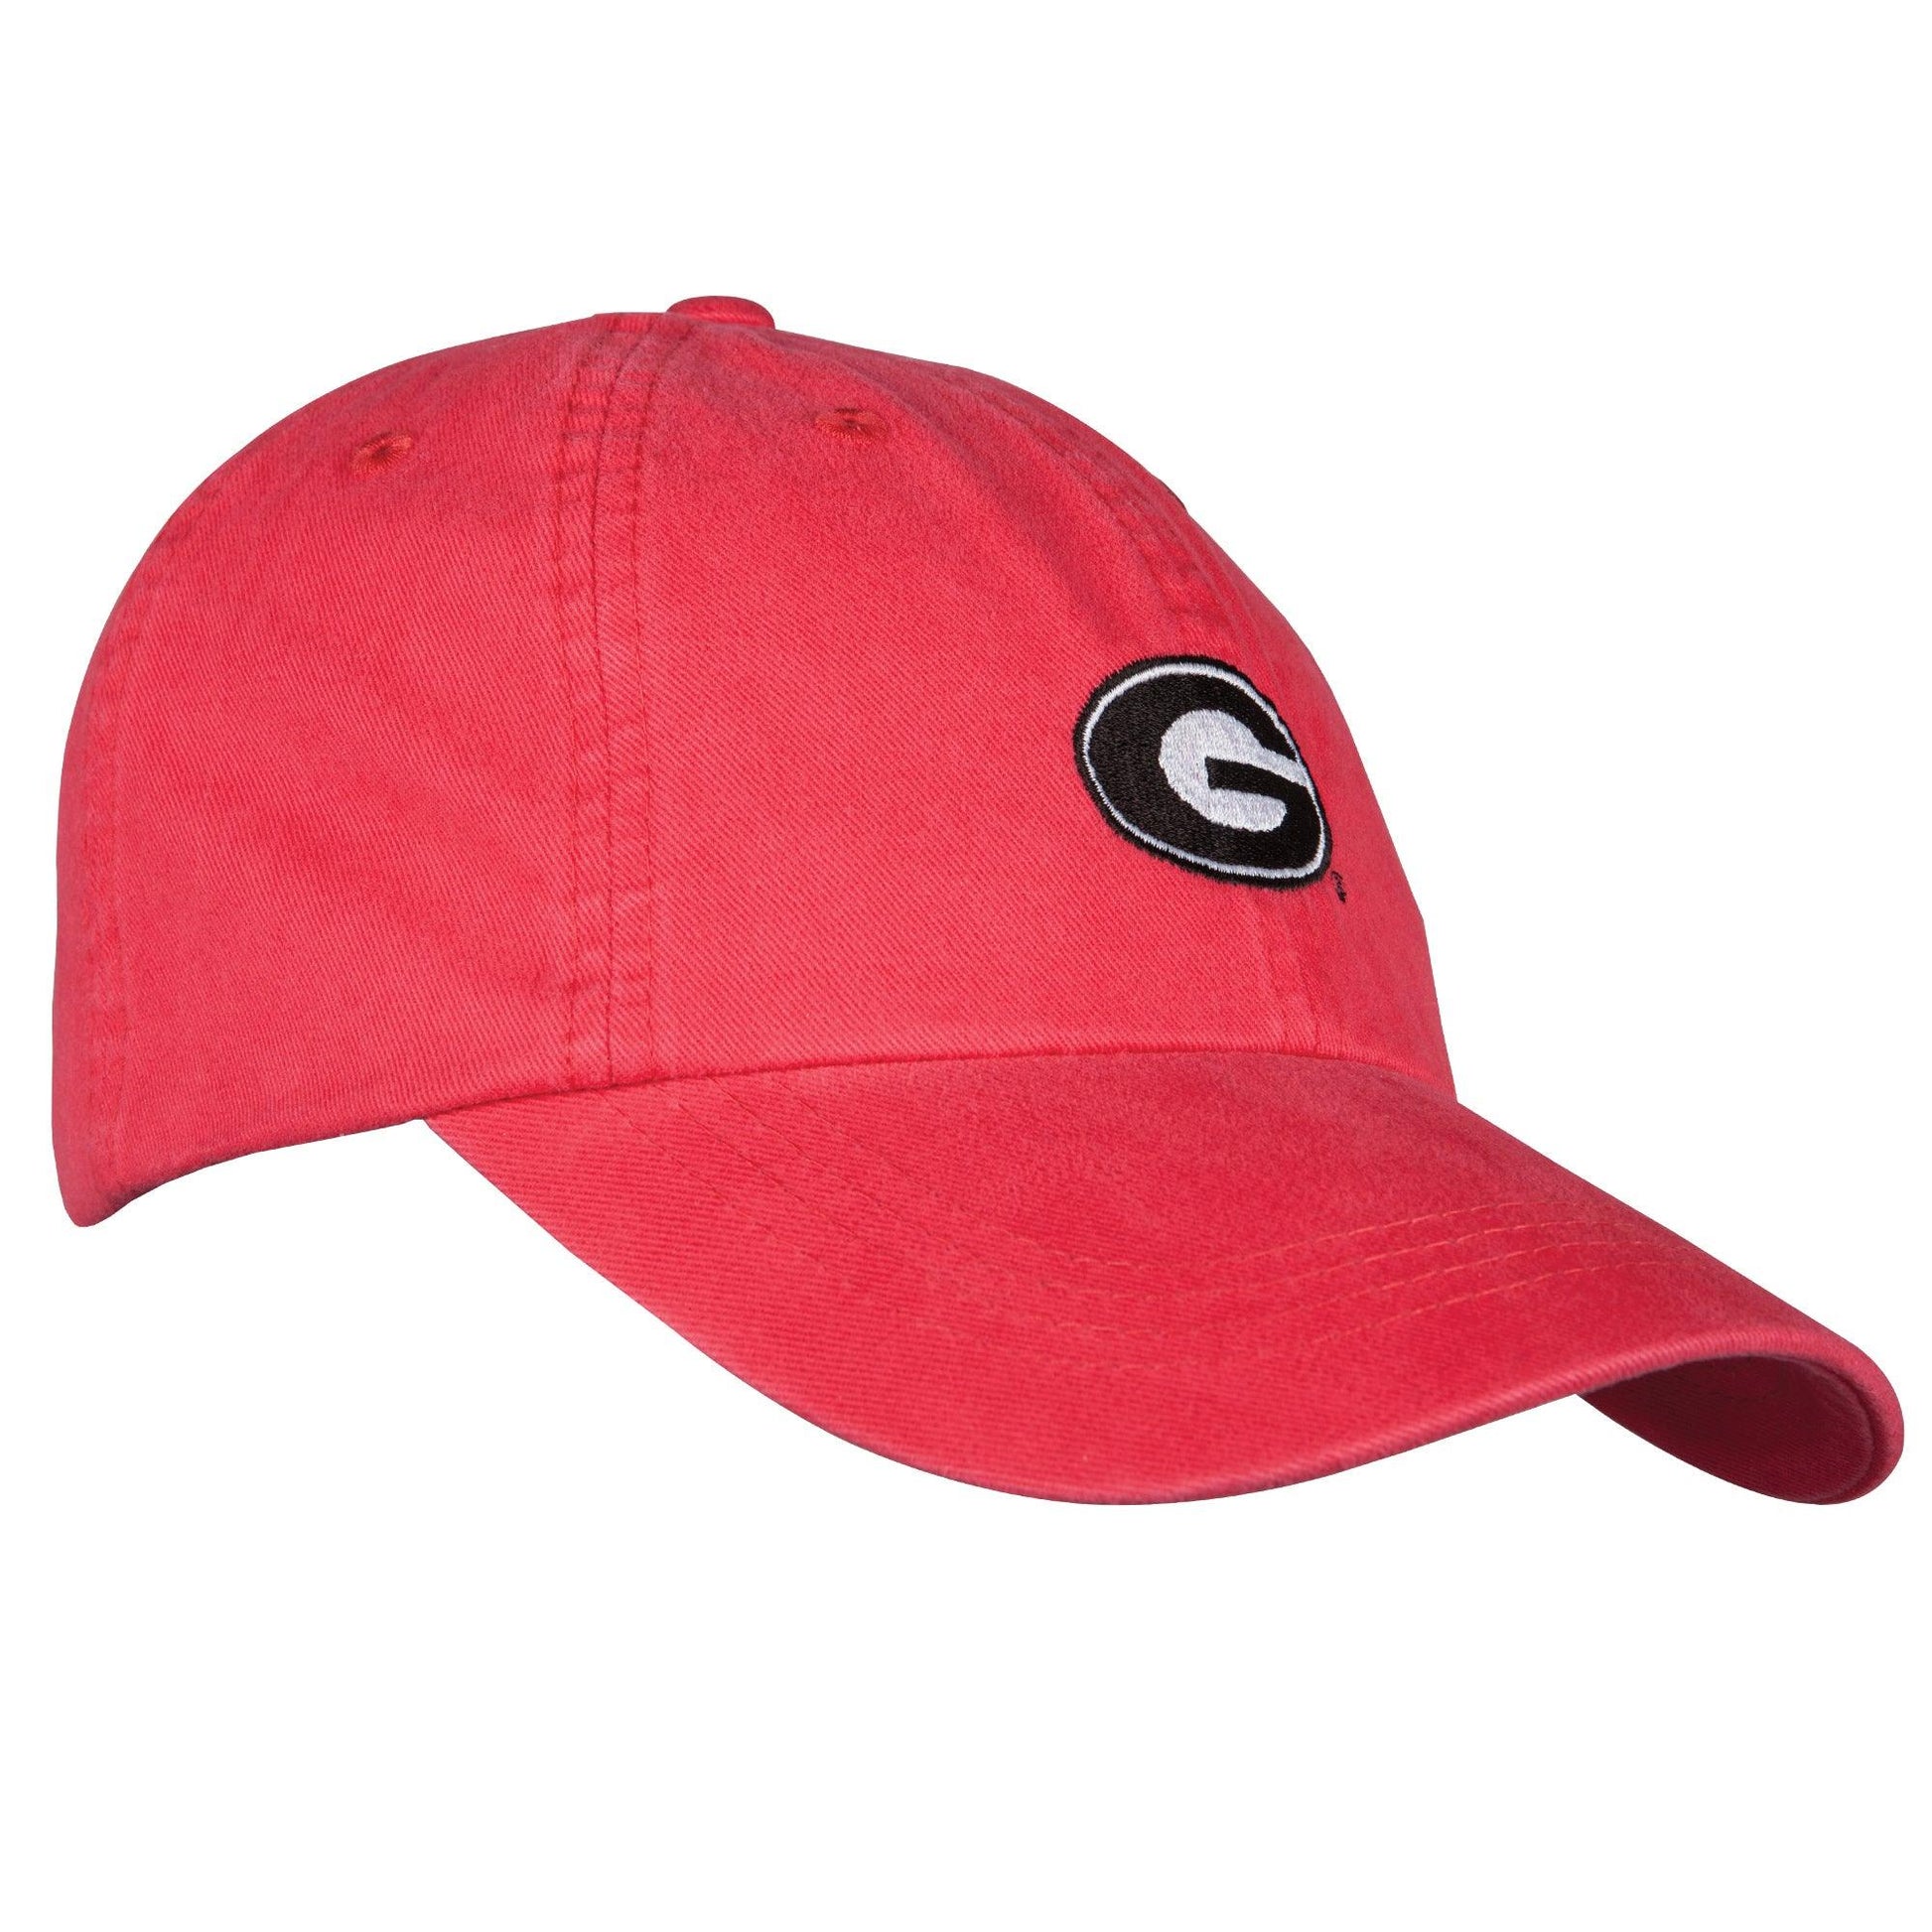 Super G Cotton Hat - OnwardReserve